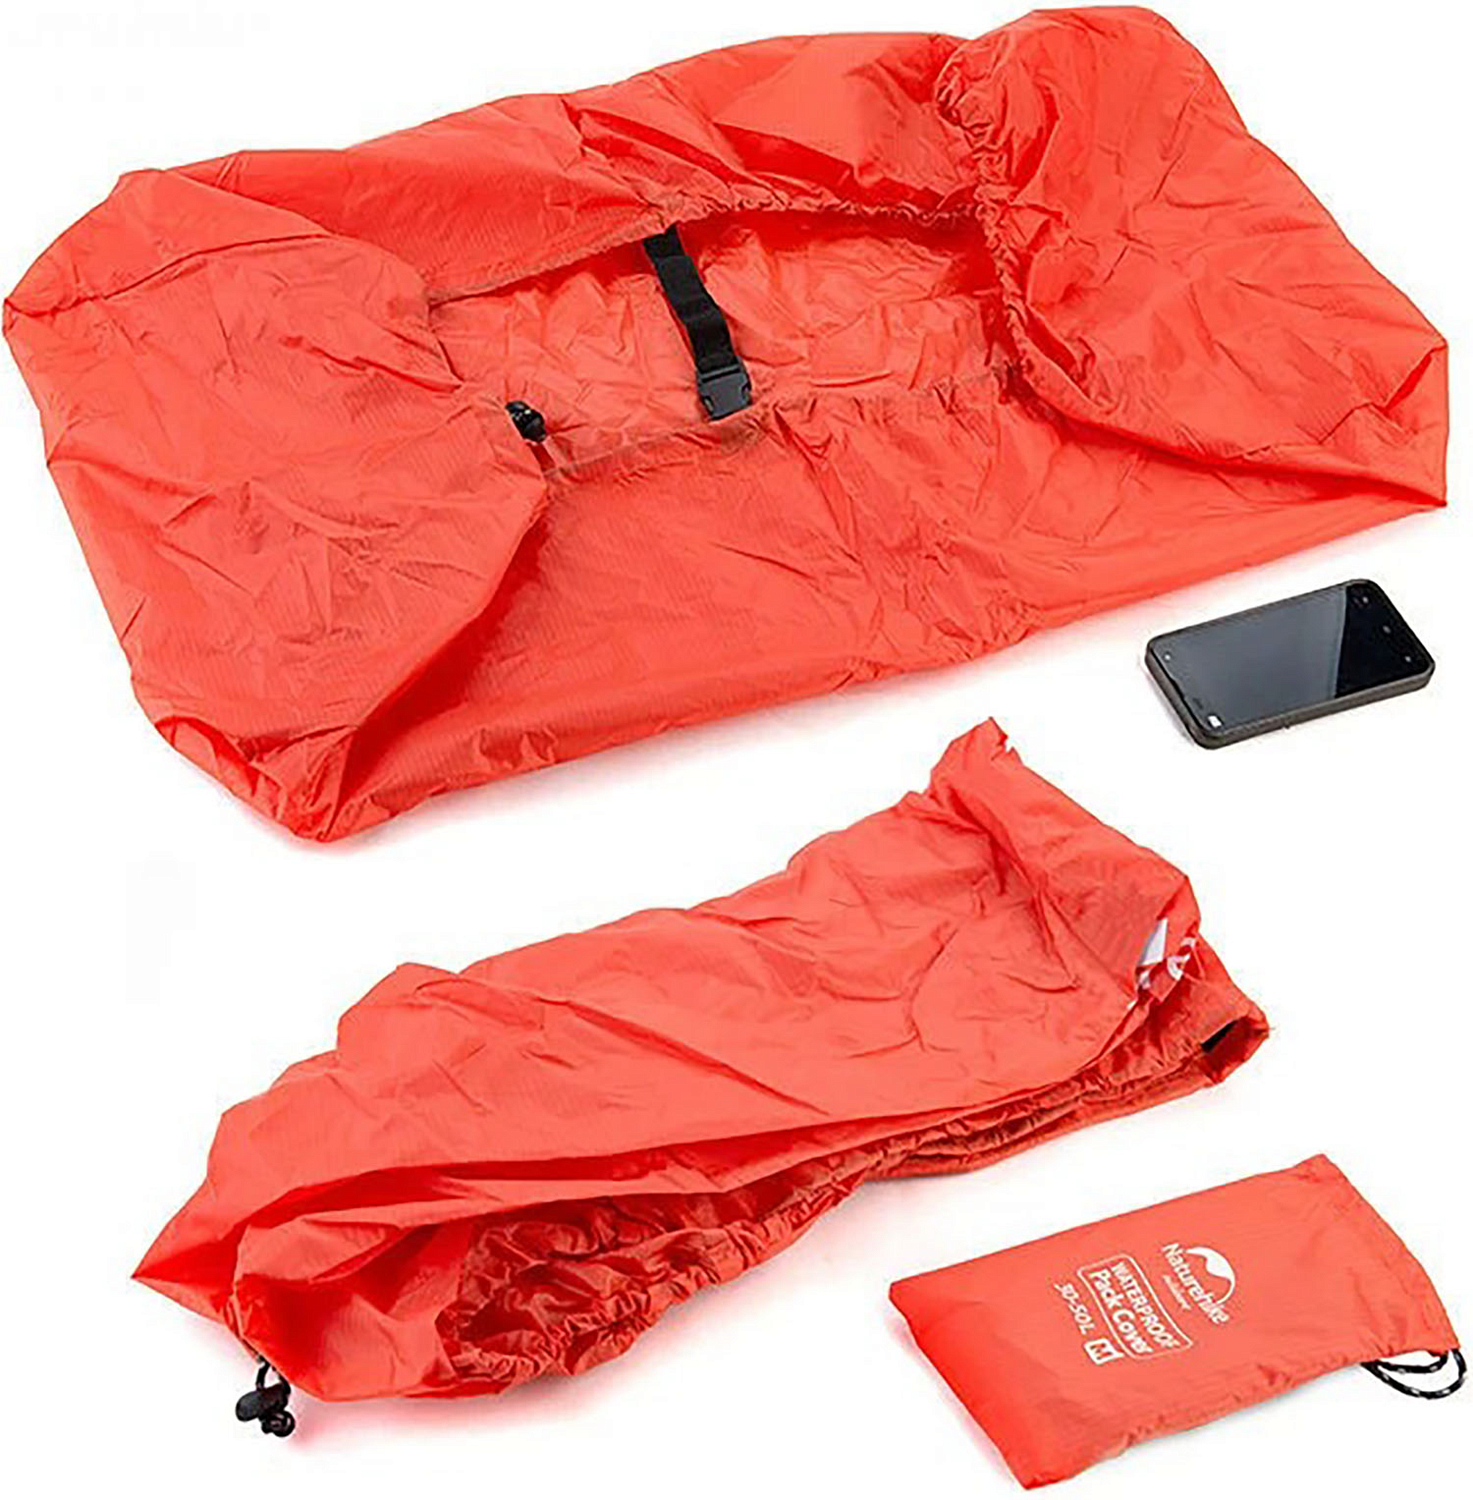 Чехол от дождя Naturehike Backpack Covers M 30-50L Orange